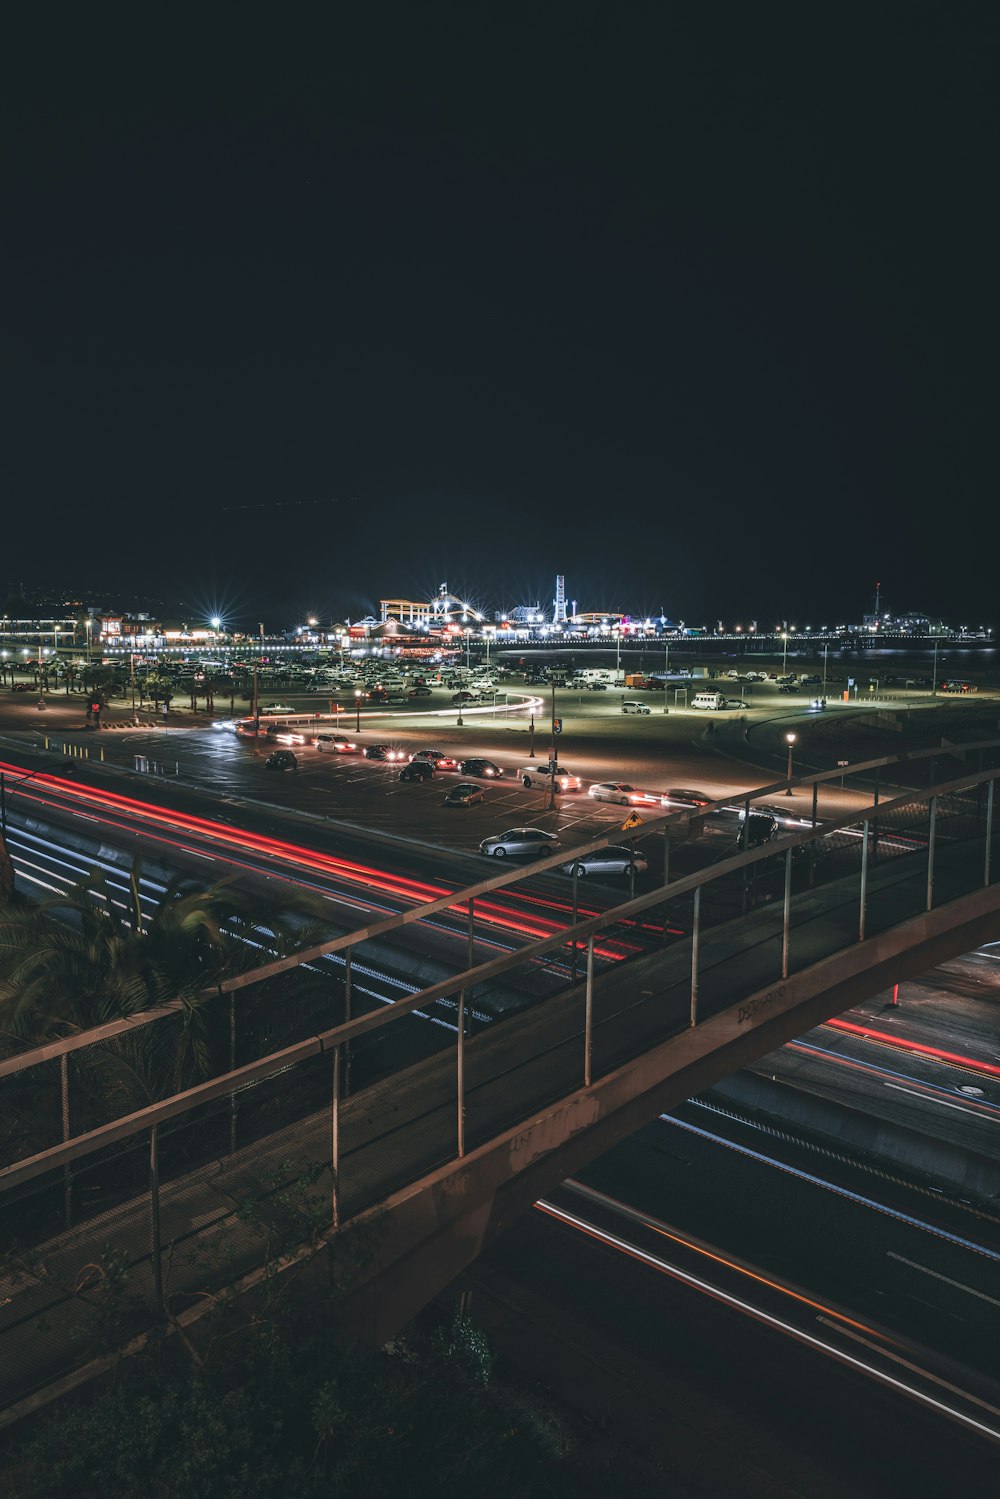 une vue nocturne d’une autoroute avec beaucoup de trafic